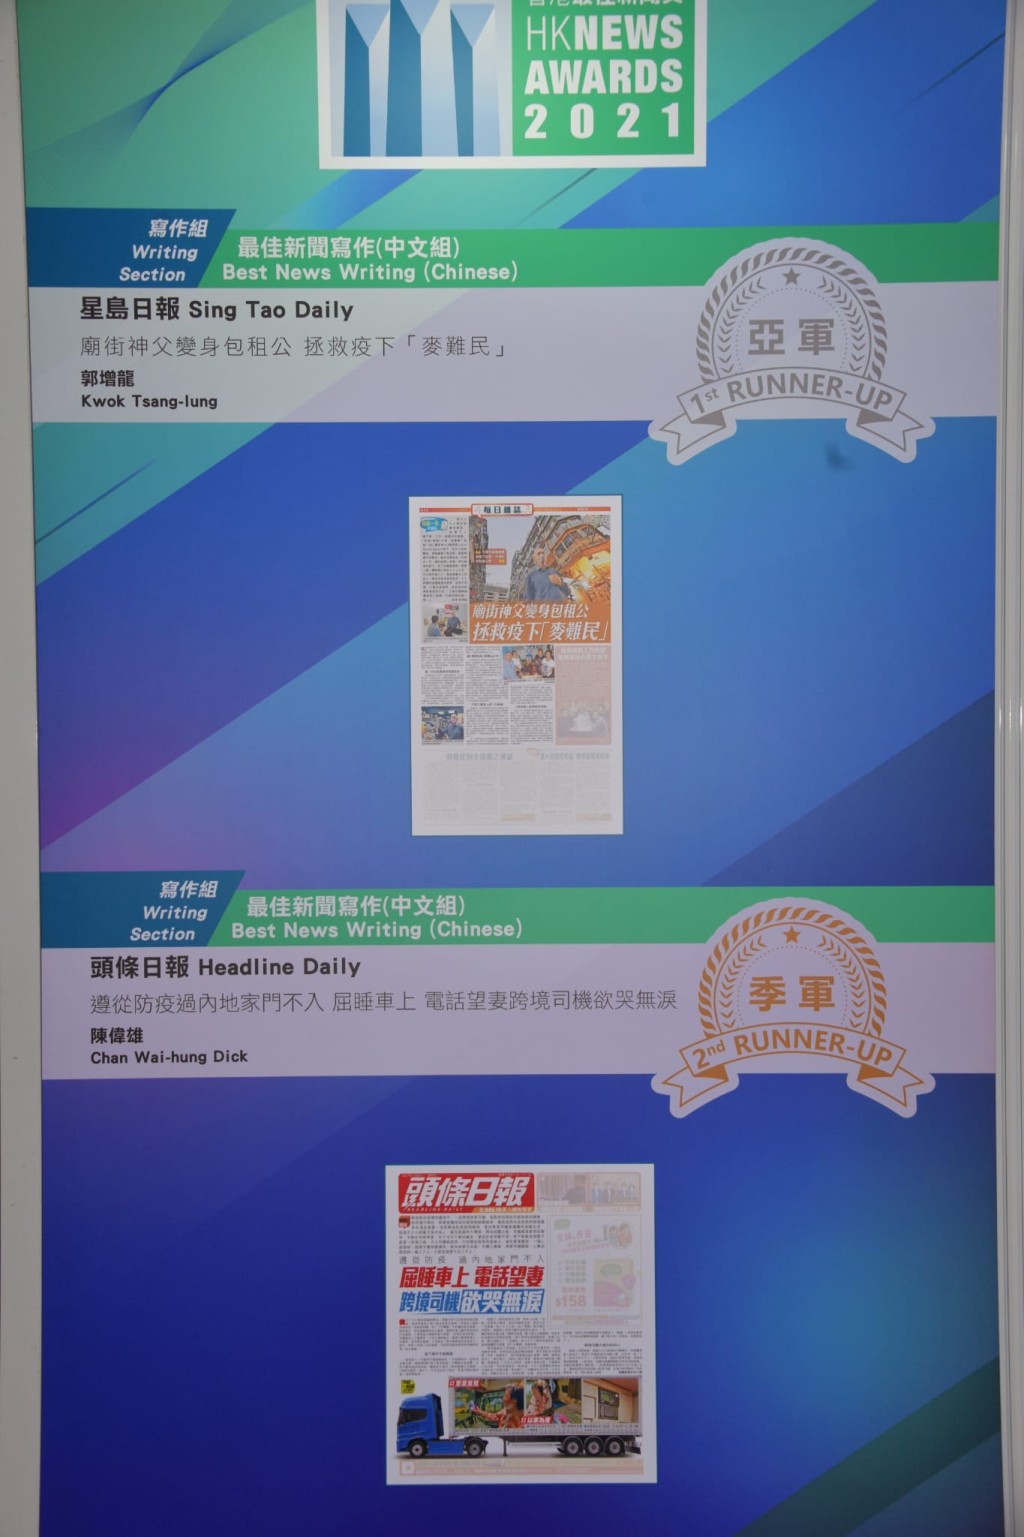 《星岛日报》凭 《庙街神父变身包租公 拯救疫下「麦难民」》夺最佳新闻写作(中文组)亚军。